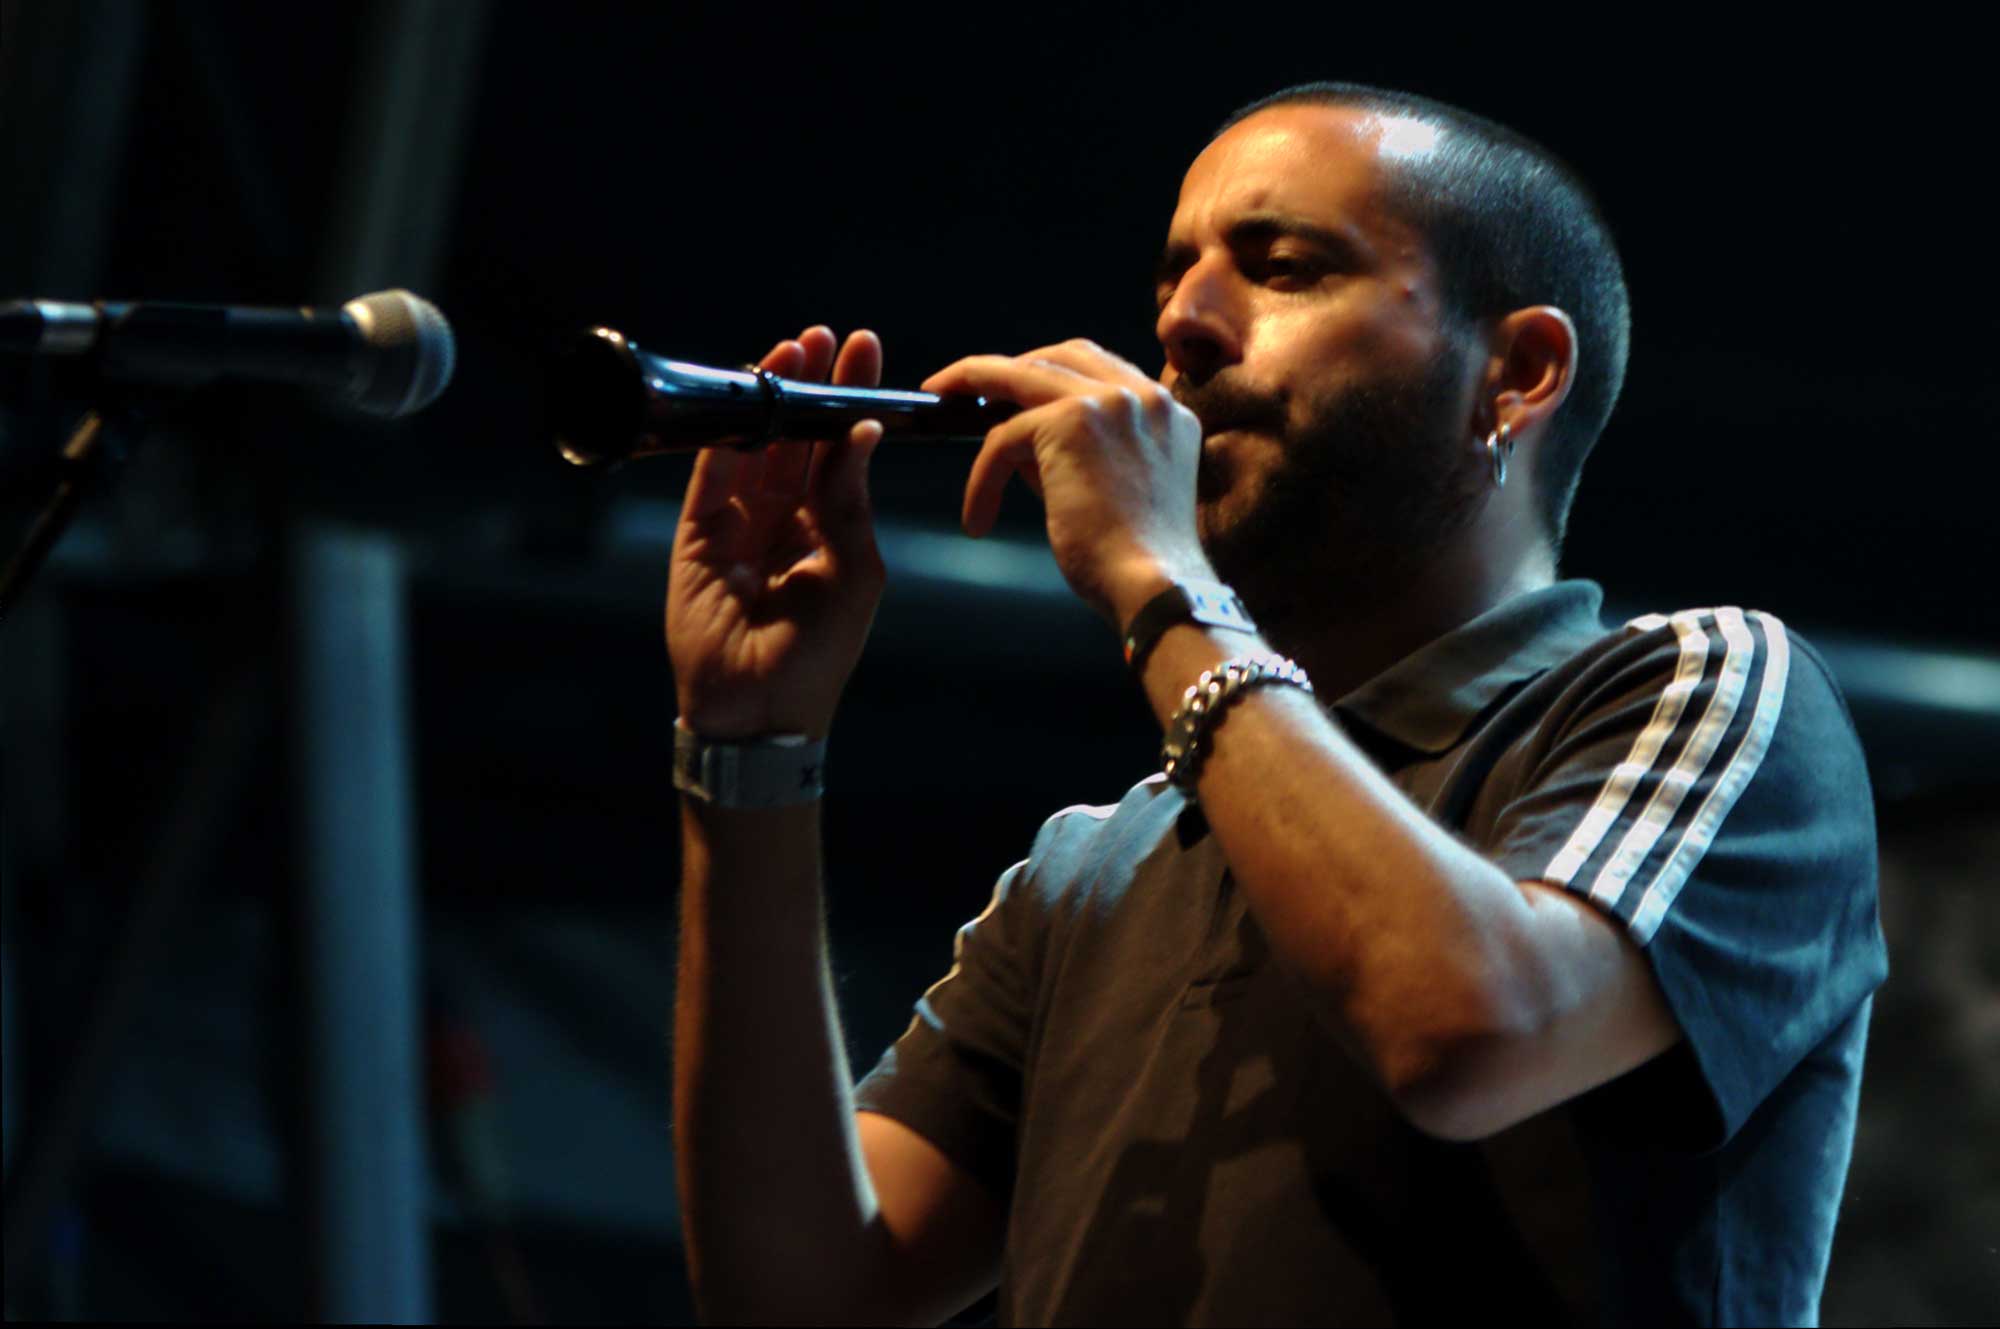 Un antic membre del grup valencià Obrint Pas, actuant en un concert de Zoo al festival Cruïlla 2016 de Barcelona.